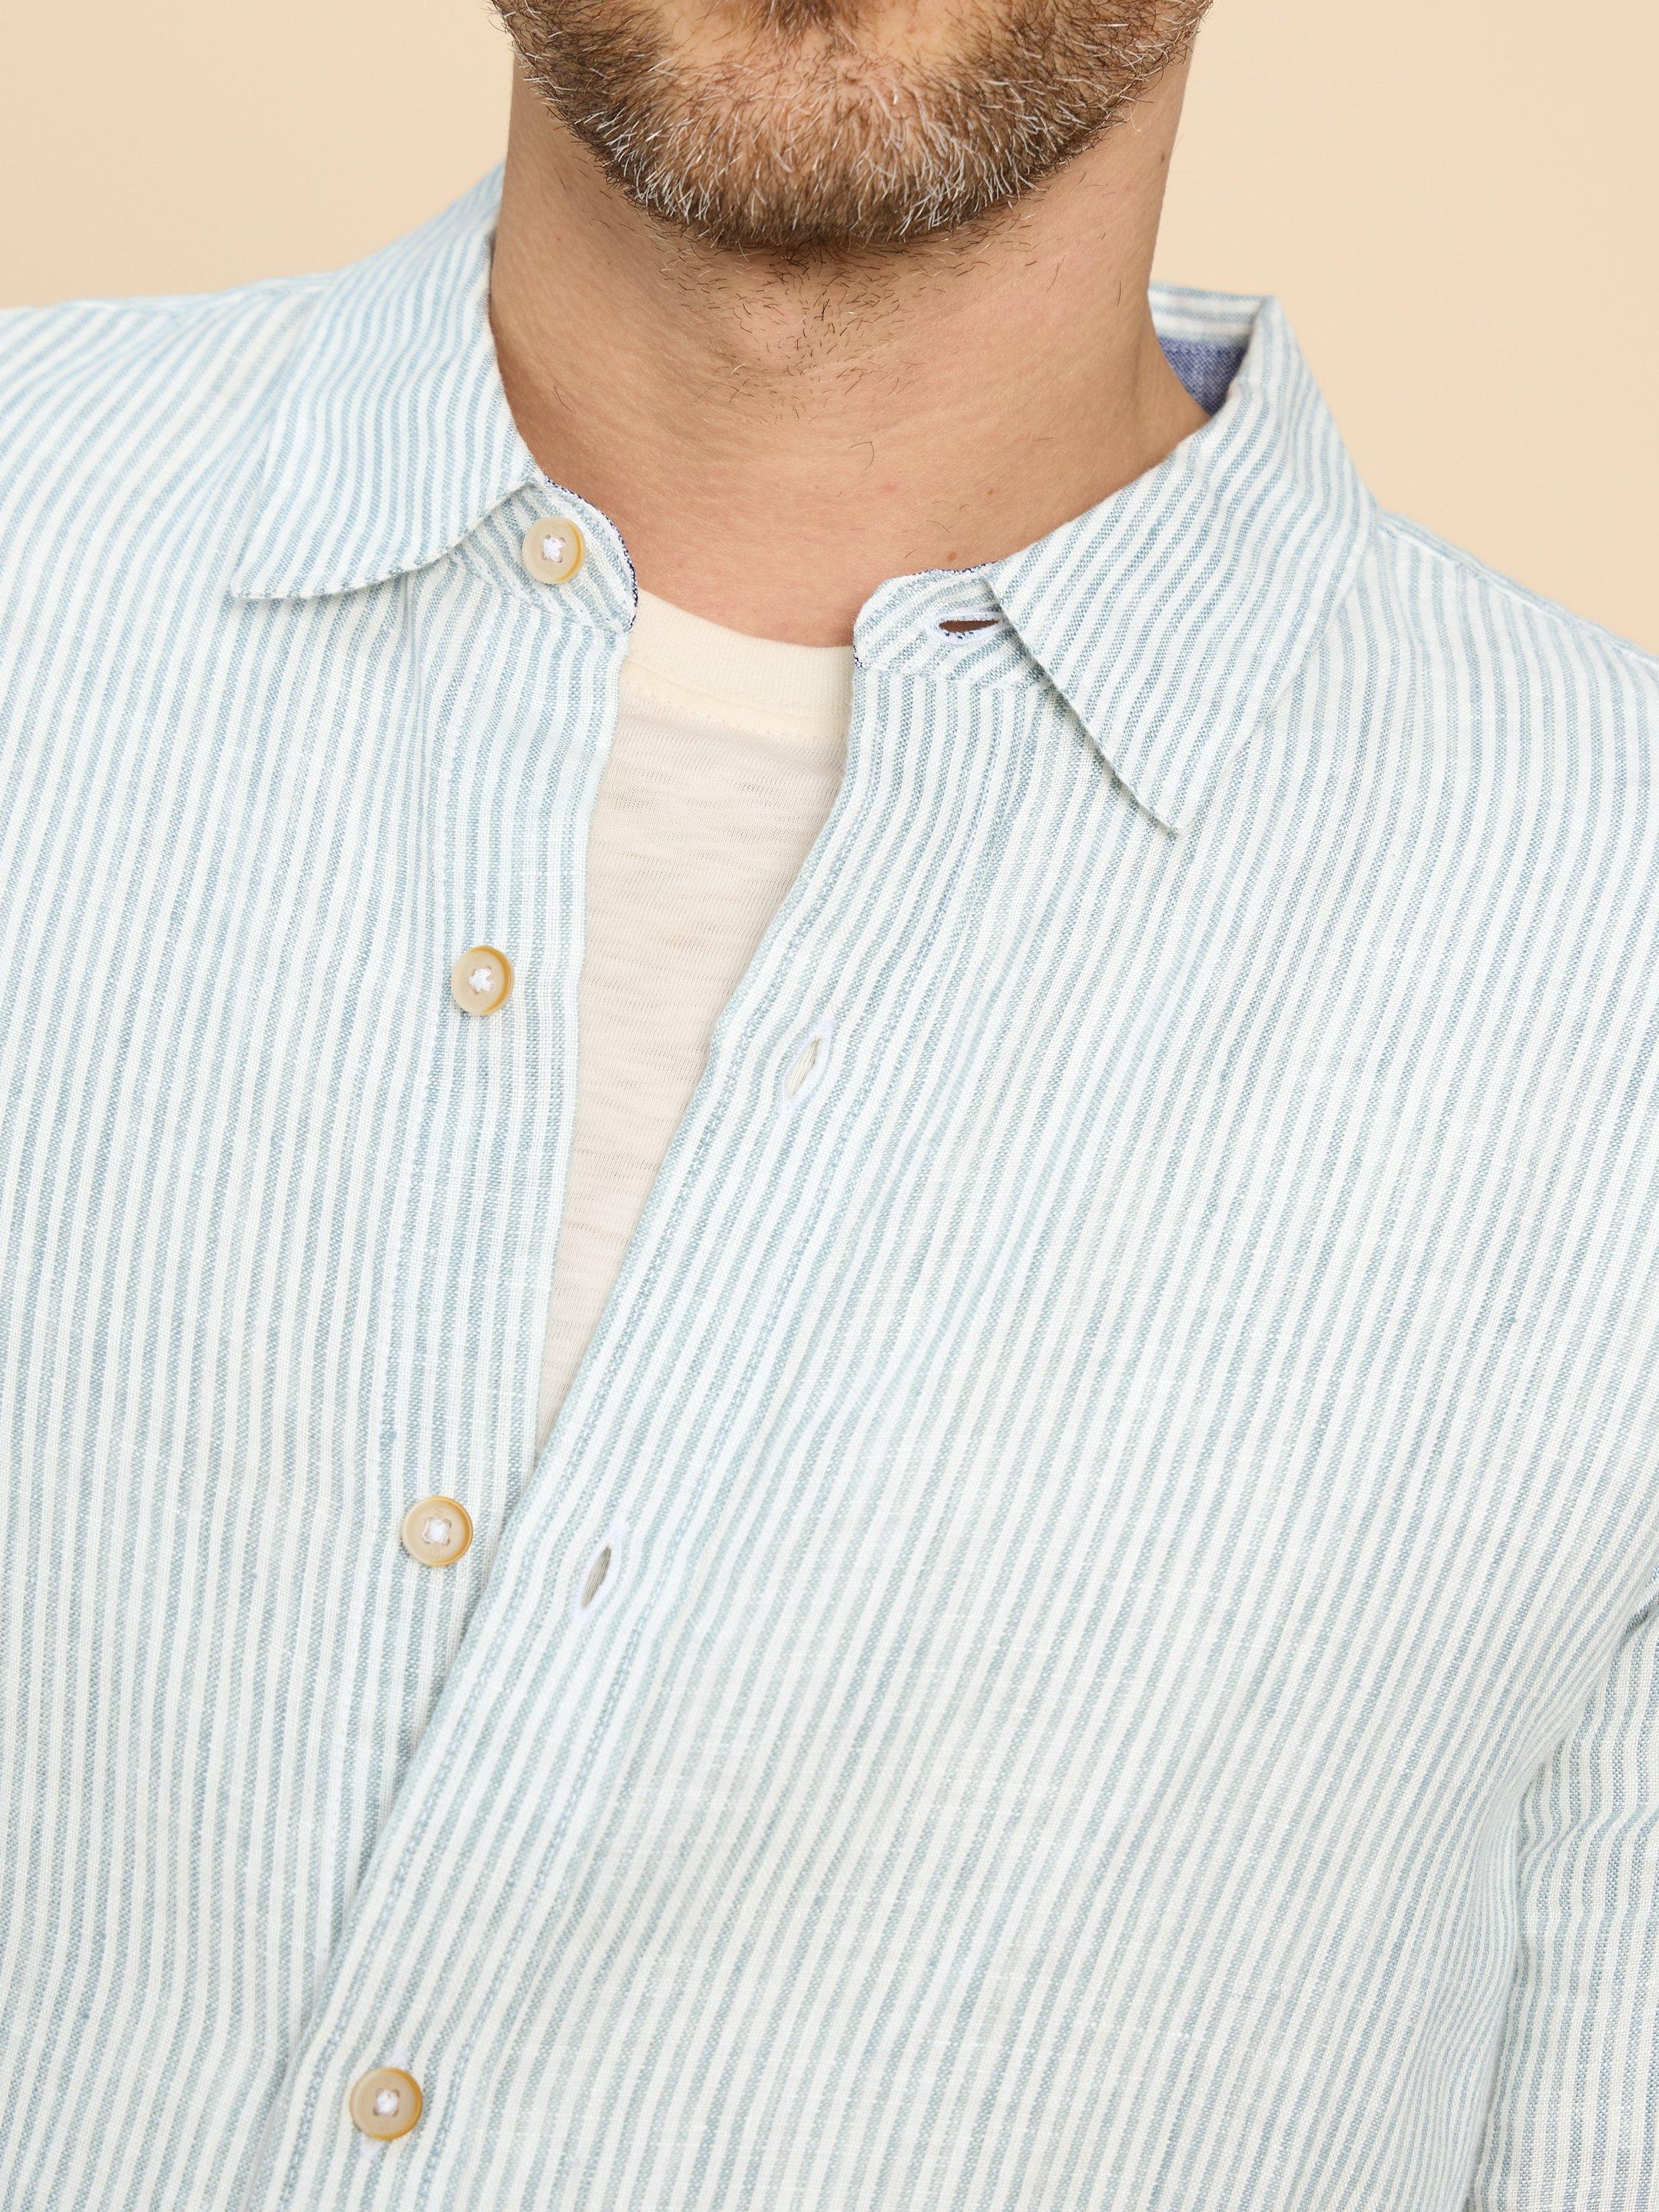 Pembroke LS Linen Stripe Shirt in BLUE MLT - MODEL DETAIL